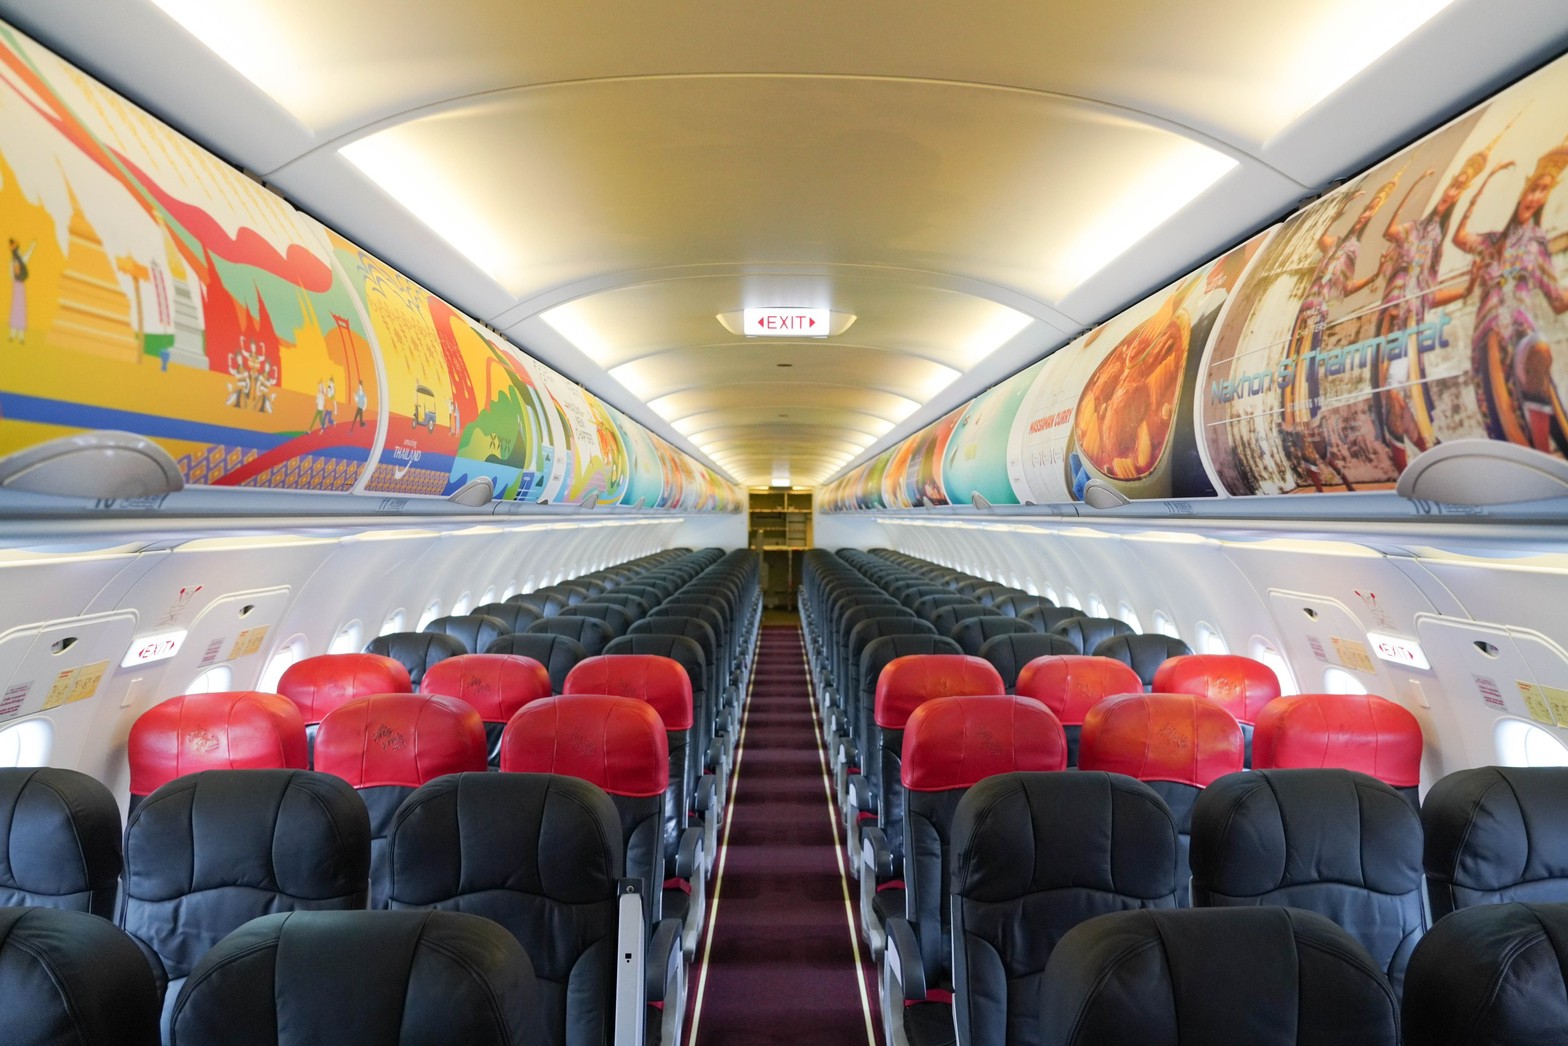 เครื่องบินแบบแอร์บัส เอ320 สายการบินไทยแอร์เอเชีย ตกแต่งช่องเก็บสัมภาระเหนือศีรษะด้วยการ์ตูนอาหารไทย สถานที่ท่องเที่ยวของไทย